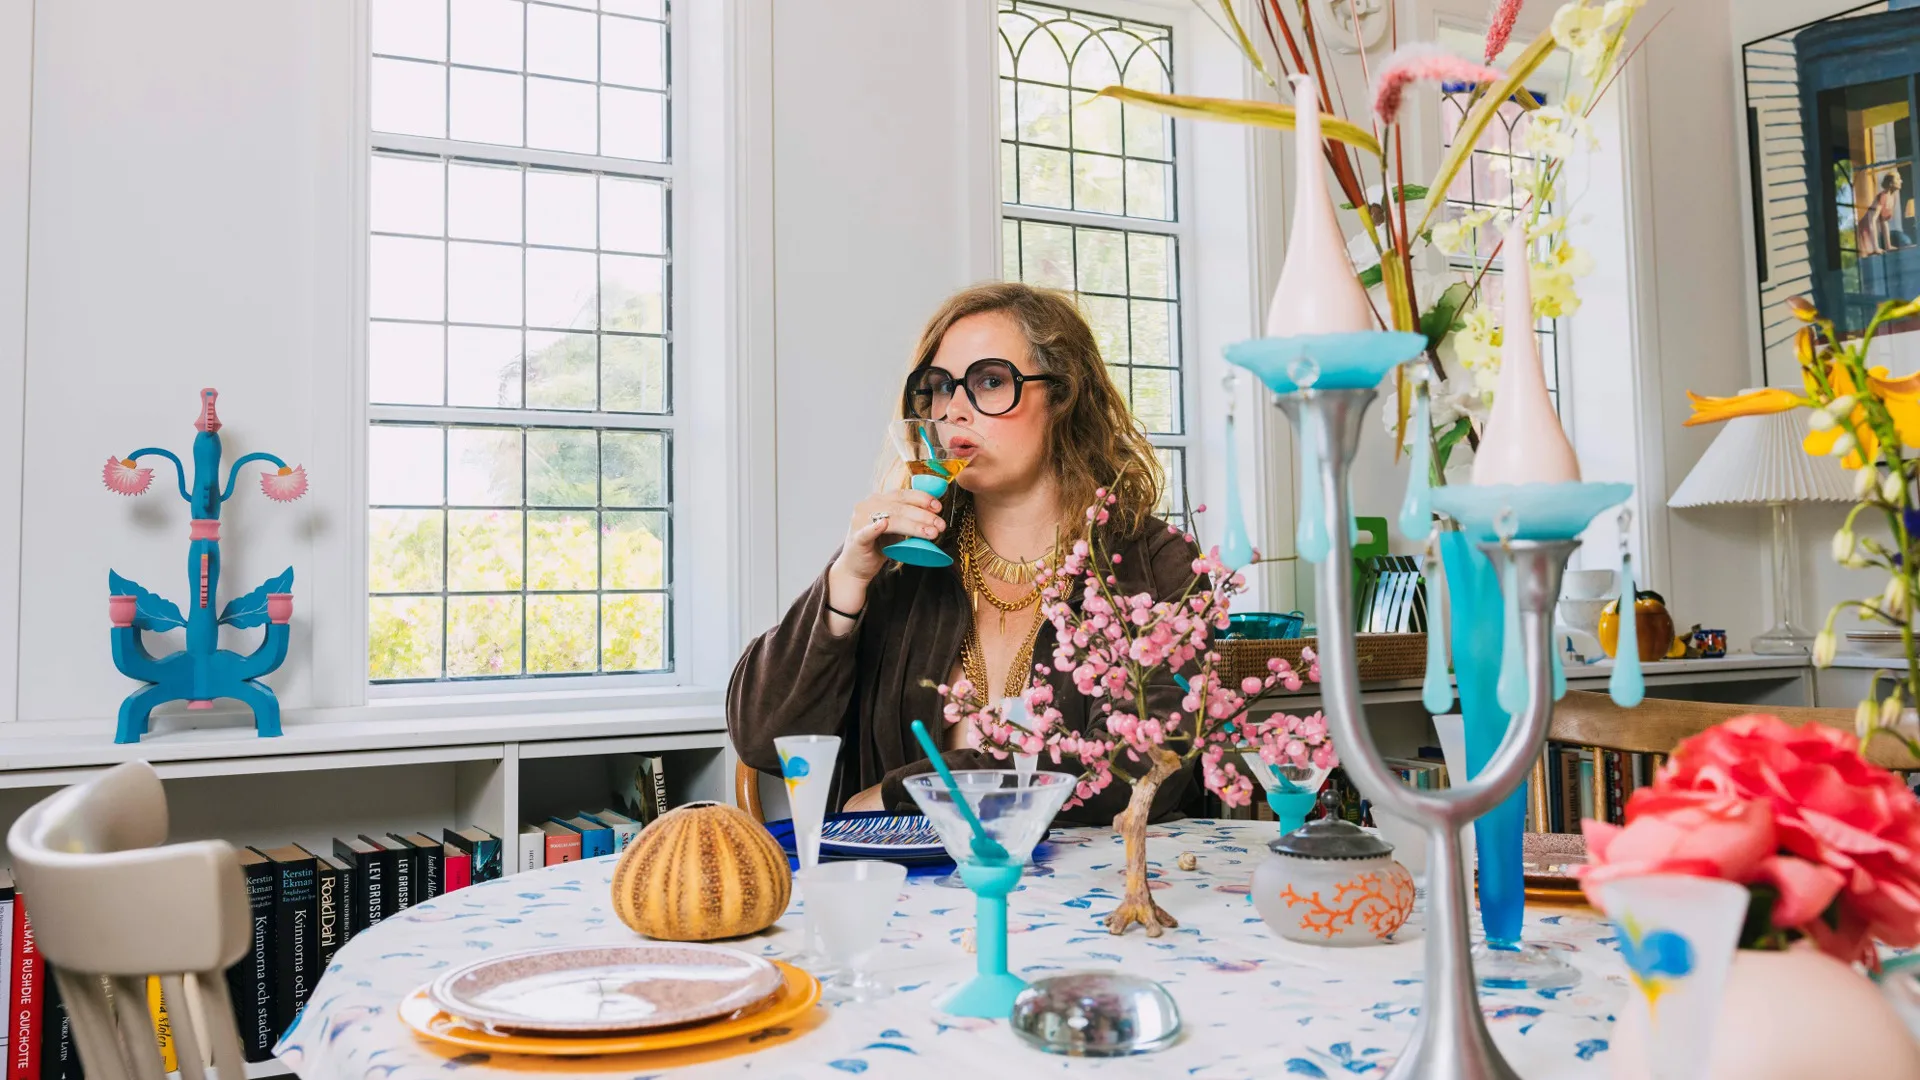 Hanna Hellquist sitter vid ett uppdukat bord med blommor och ljusstakar. Hanna dricker ur ett vinglas.